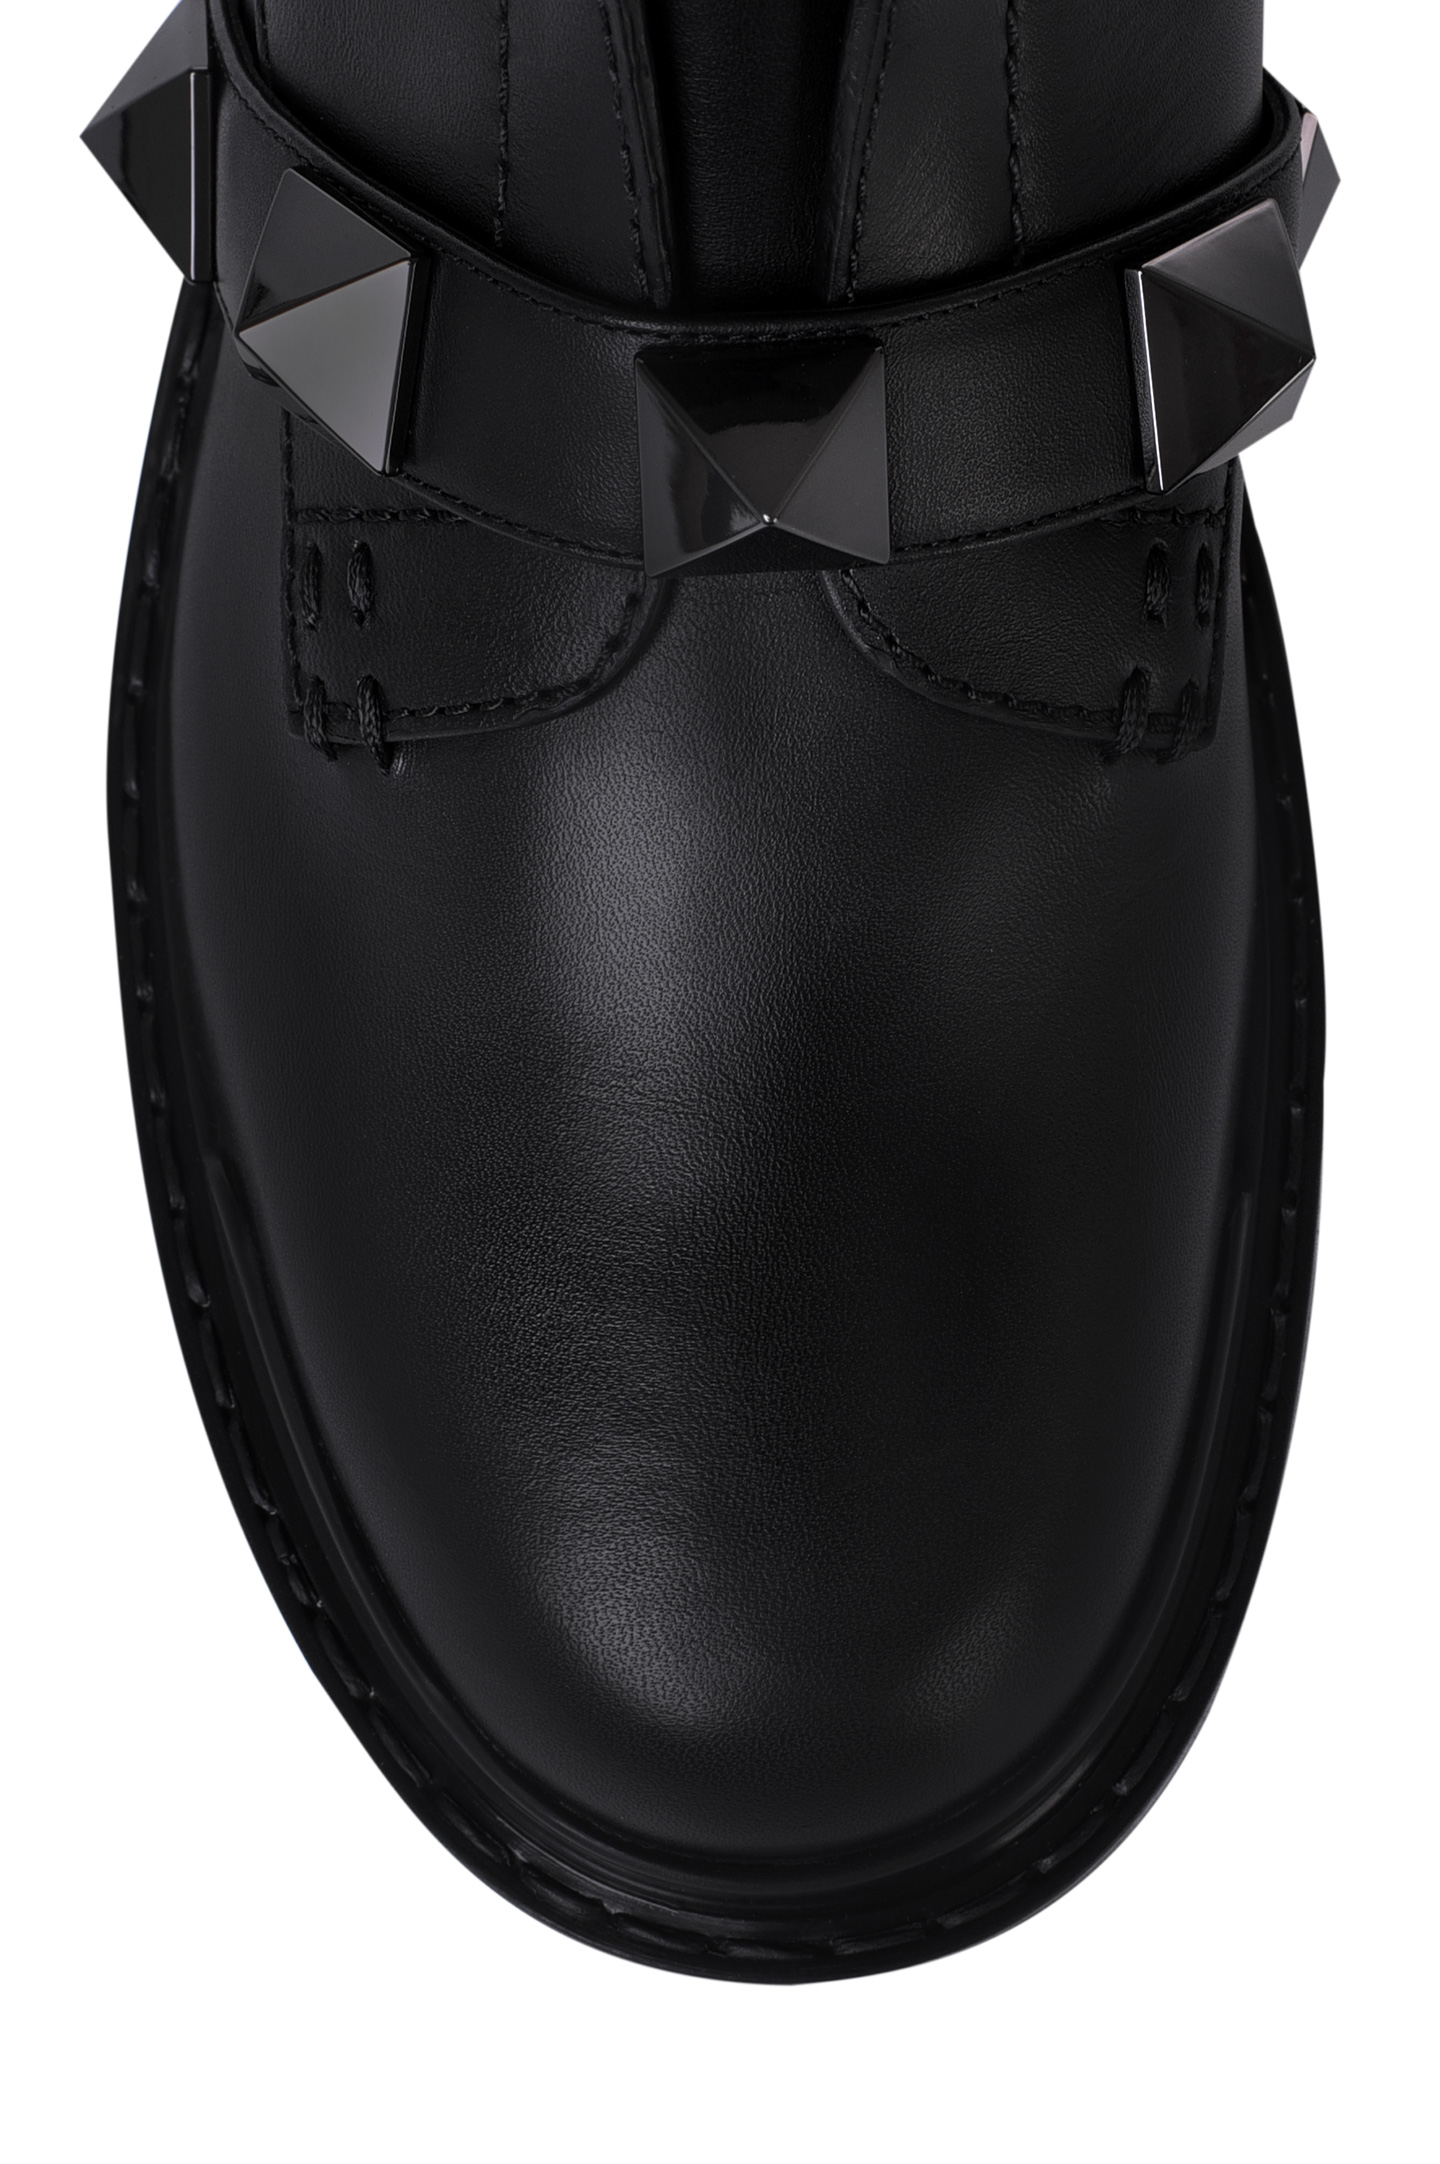 Ботинки VALENTINO GARAVANI WW2S0CJ3FYP, цвет: Черный, Женский